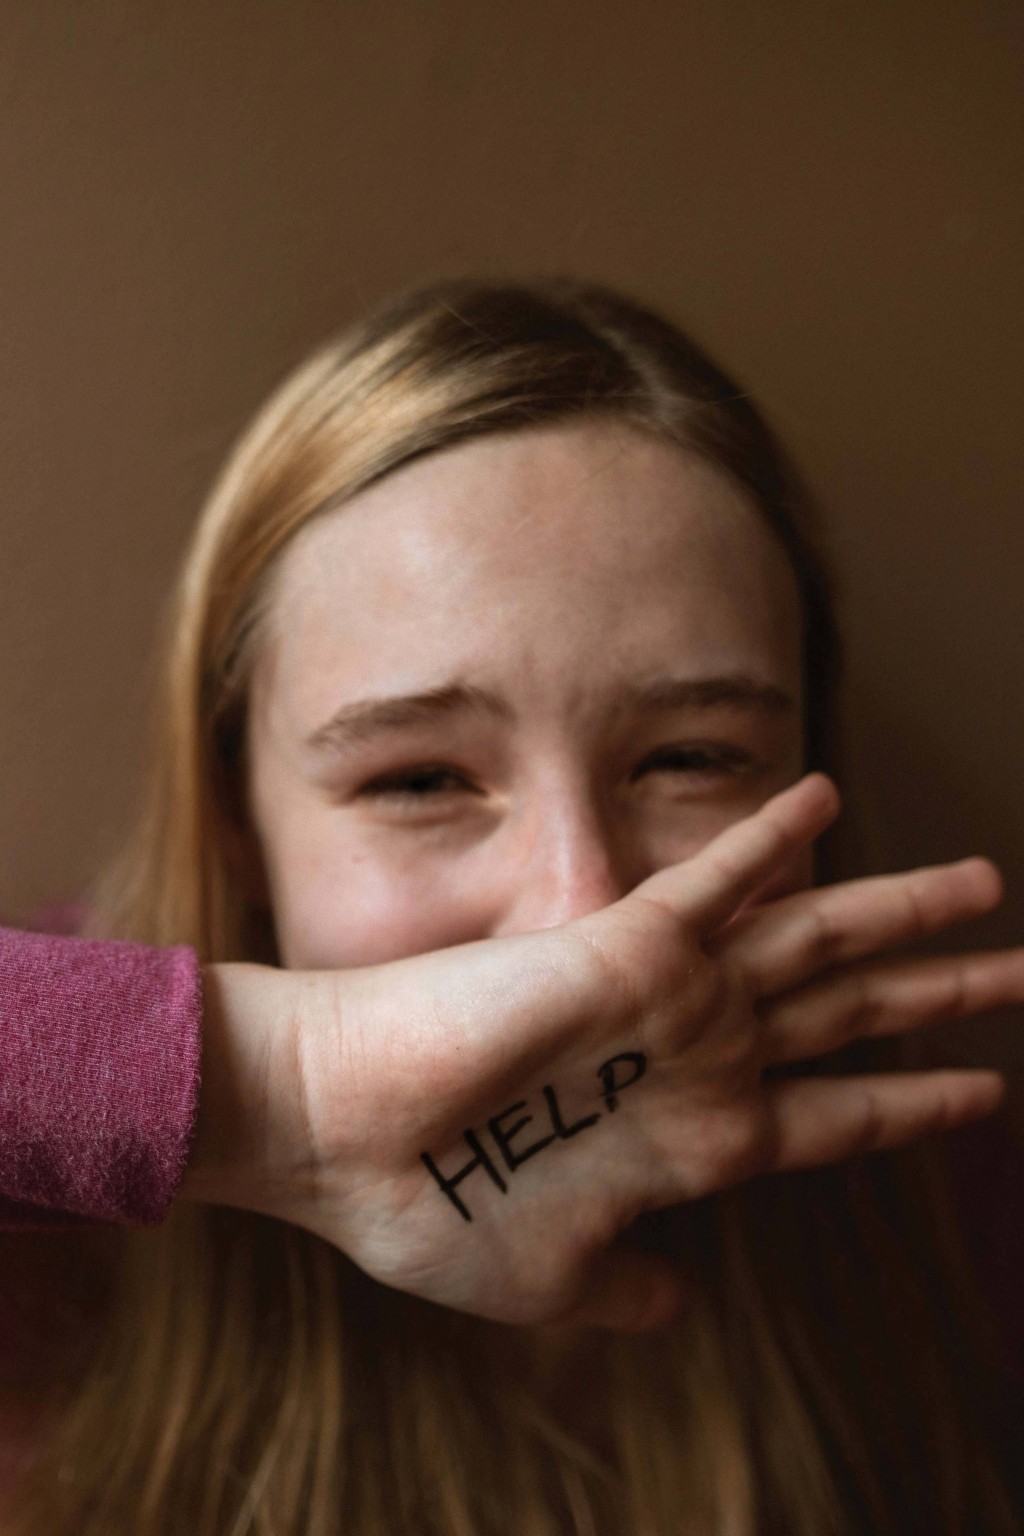 Abuso sexual al menor: ¿Quiénes lo cometen? ¿Qué debe hacerse?